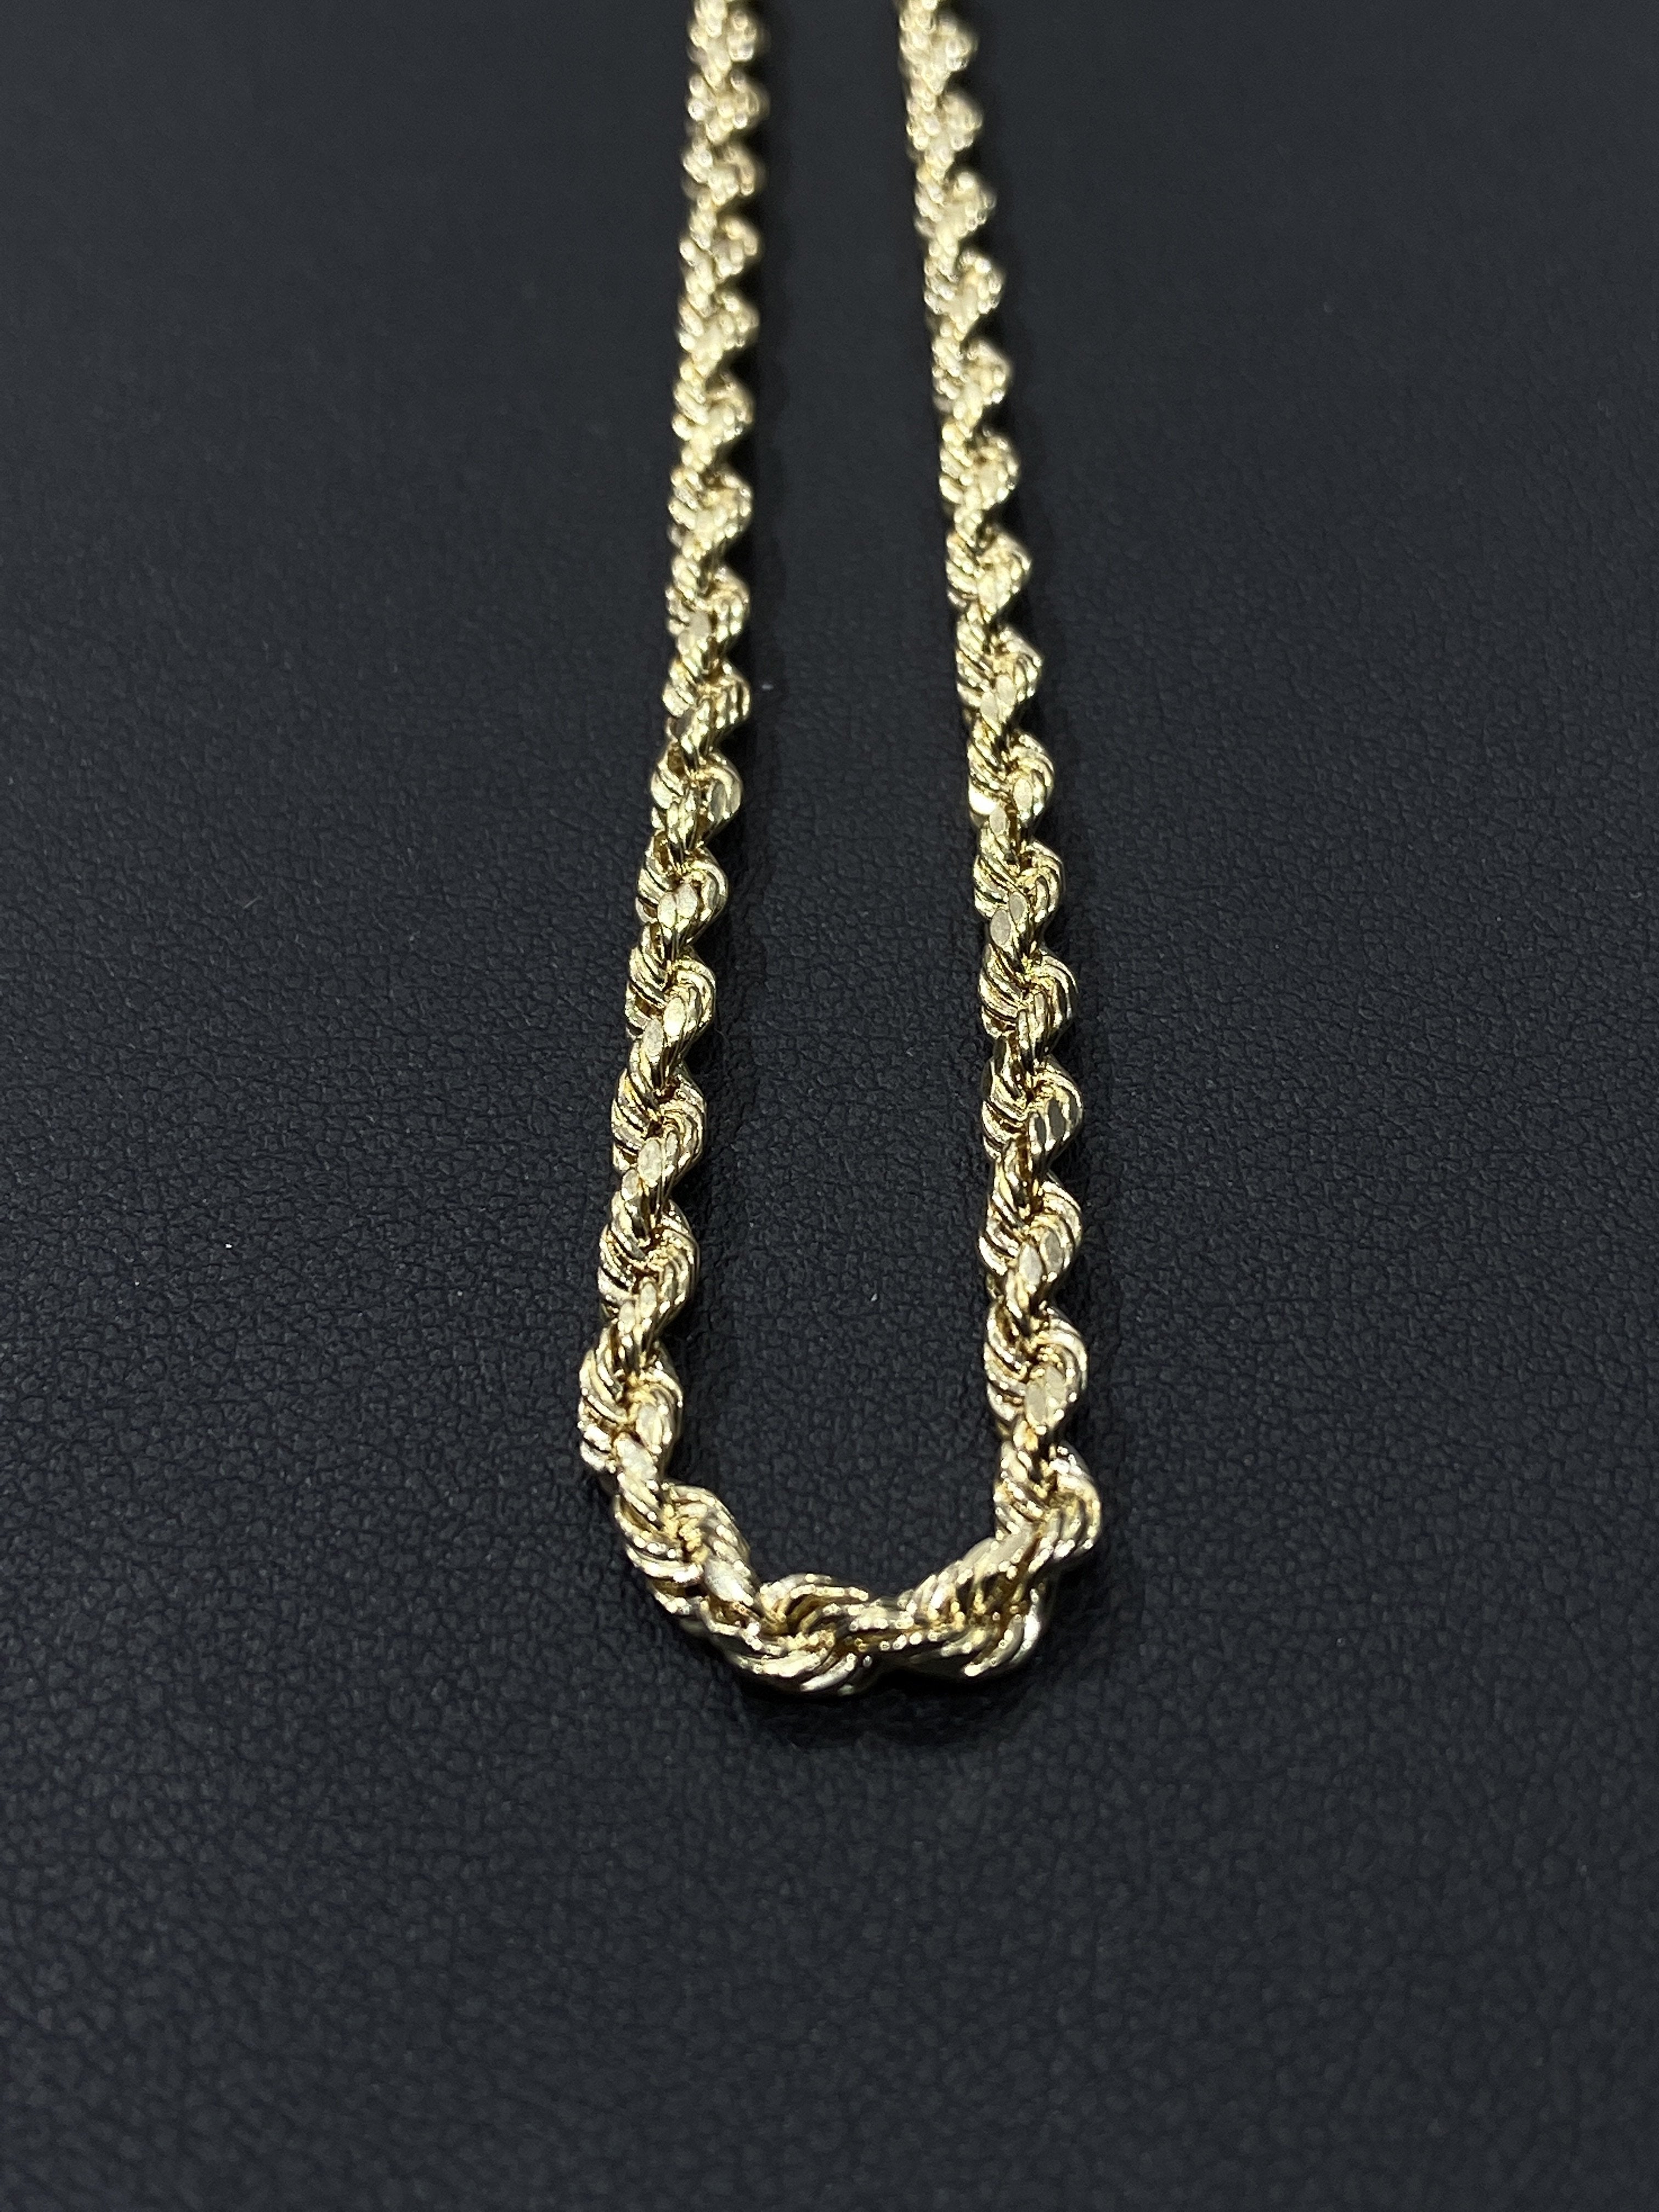 14K Gold Rope Chain (Regular) - 5mm - White Carat Diamonds 